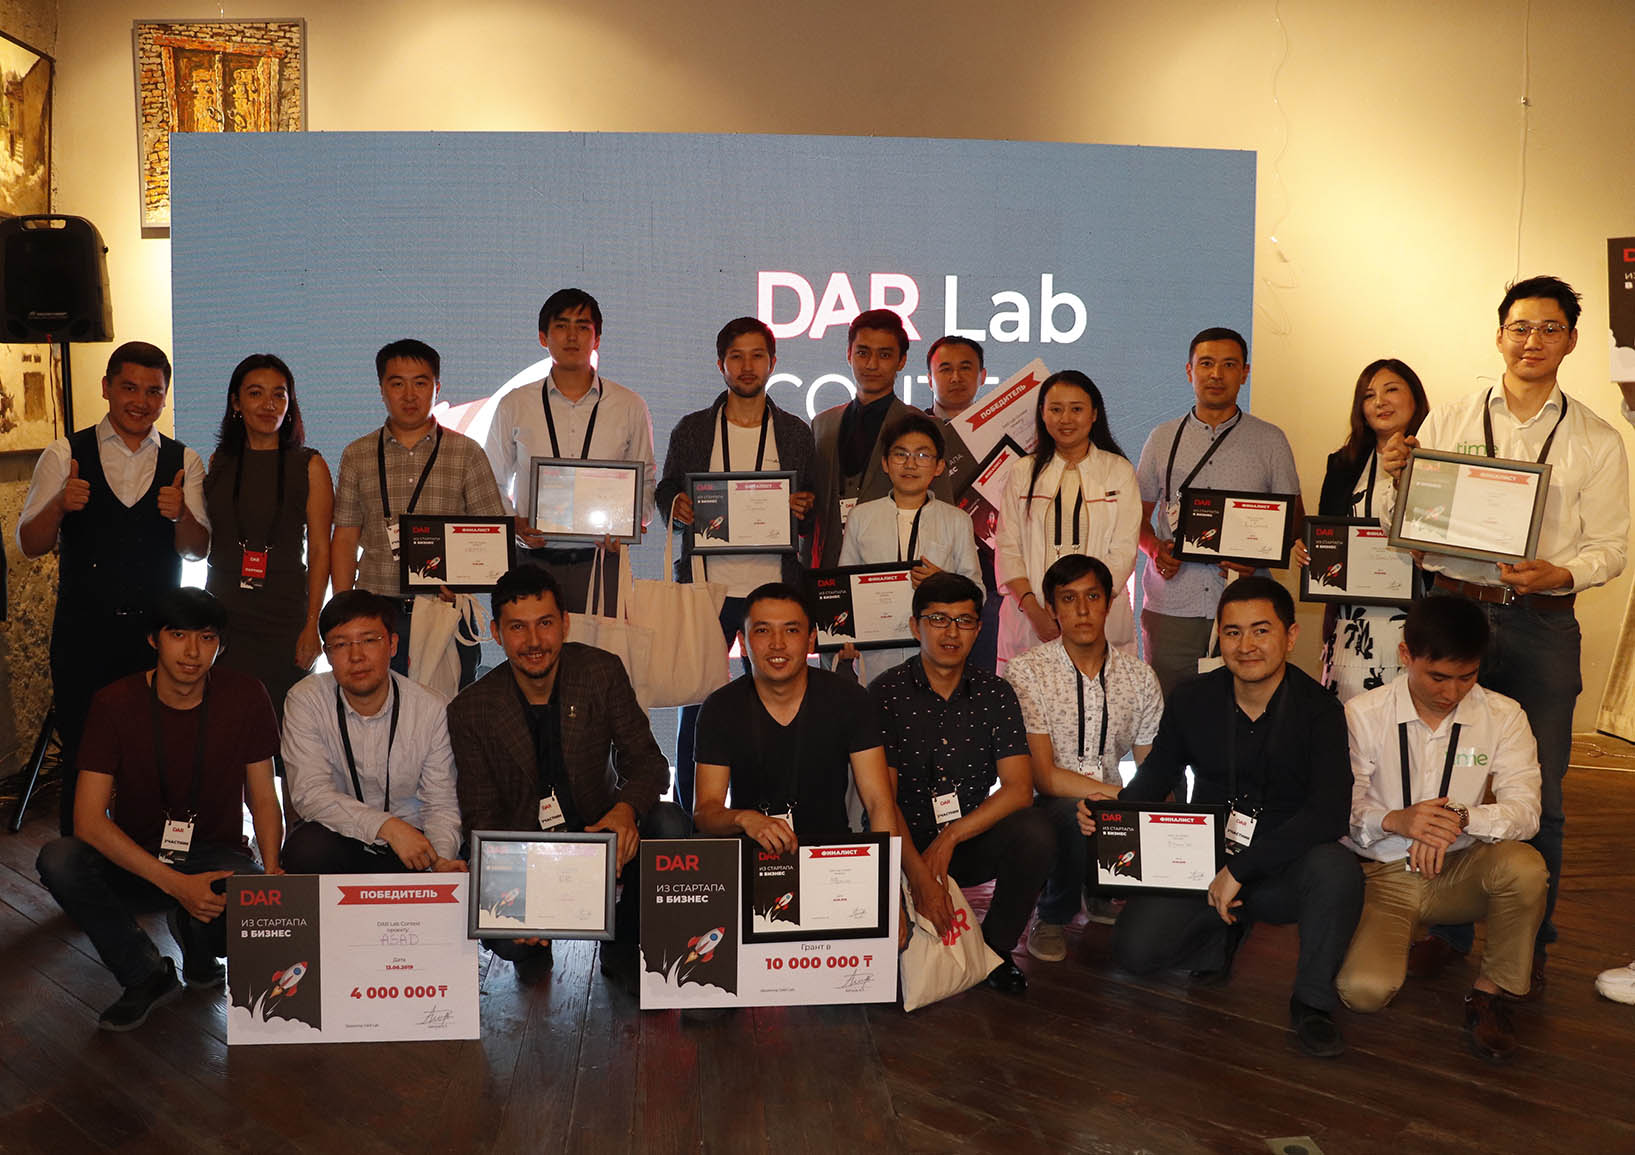 13 июня в Алматы прошел финал конкурса Dar Lab